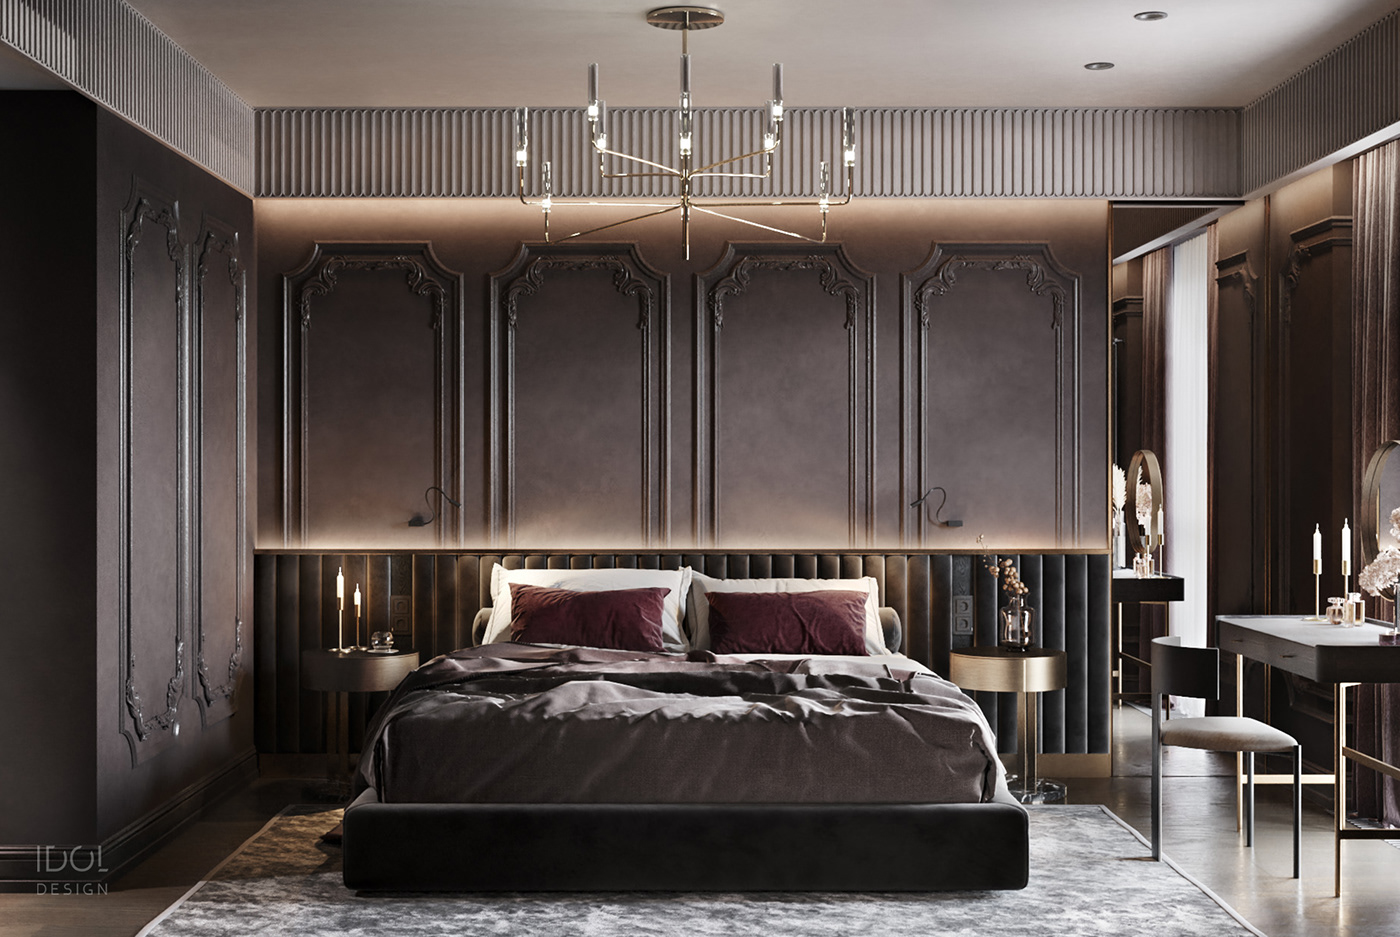 bright living room dark bedroom interior design  modern interior гипс в интерьере камень в интерьере современный интерьер яркий диван